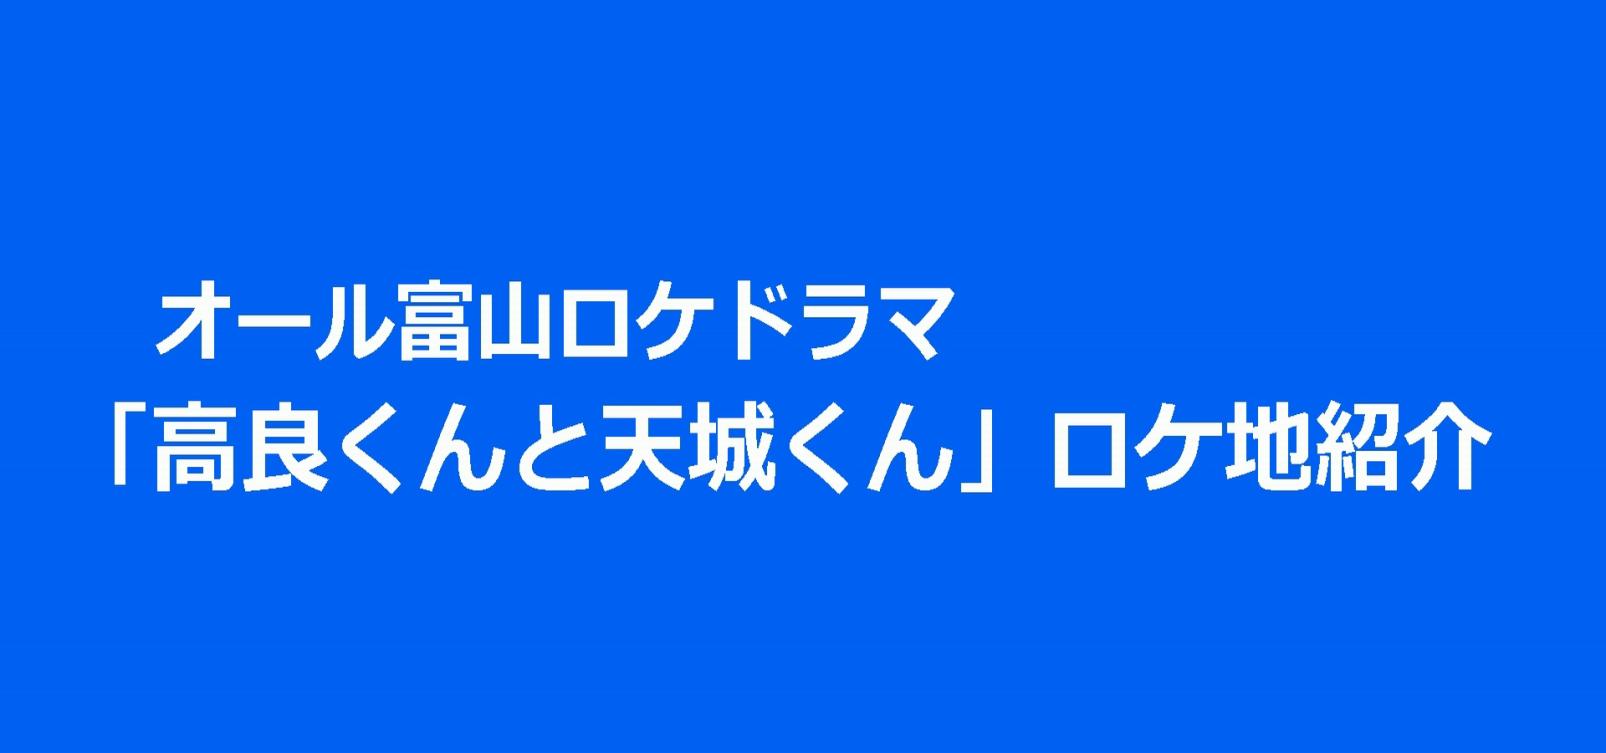 オール富山ロケドラマ「高良くんと天城くん」ロケ地紹介-1